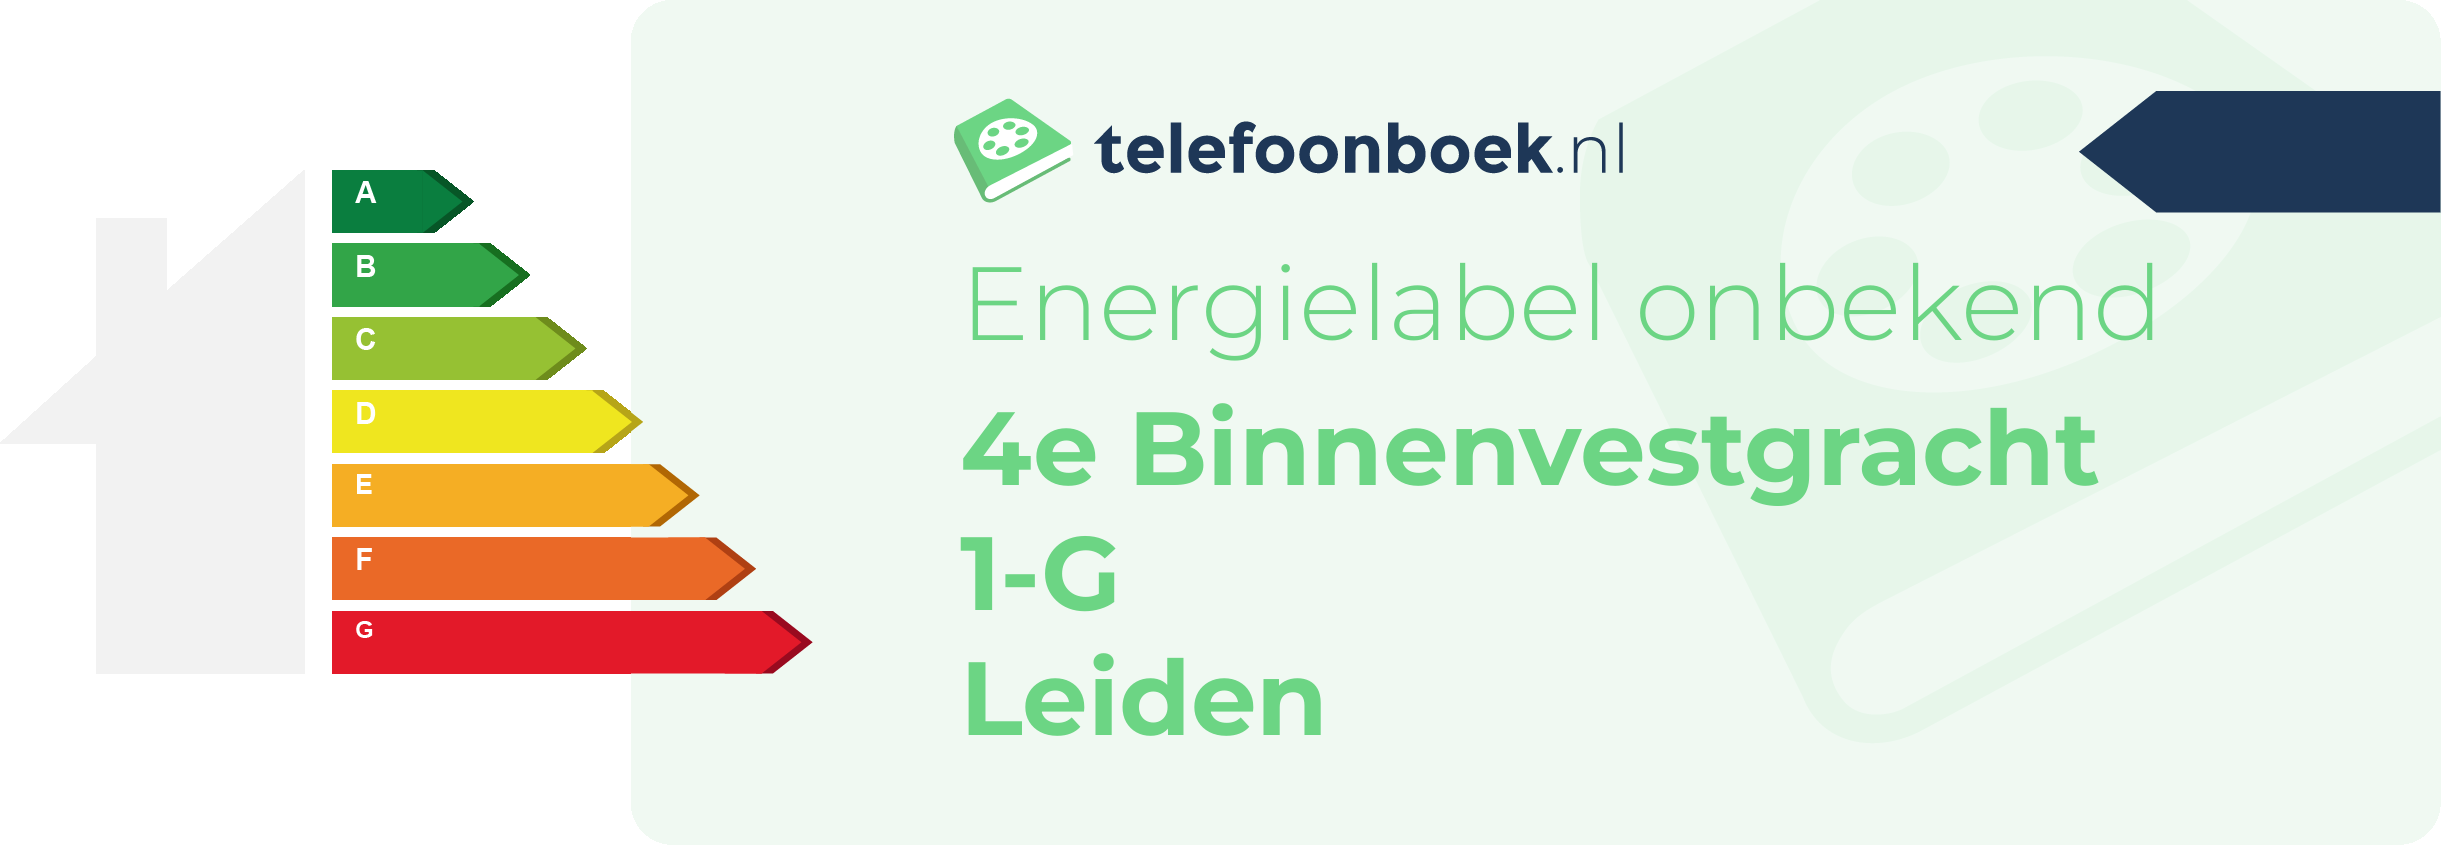 Energielabel 4e Binnenvestgracht 1-G Leiden